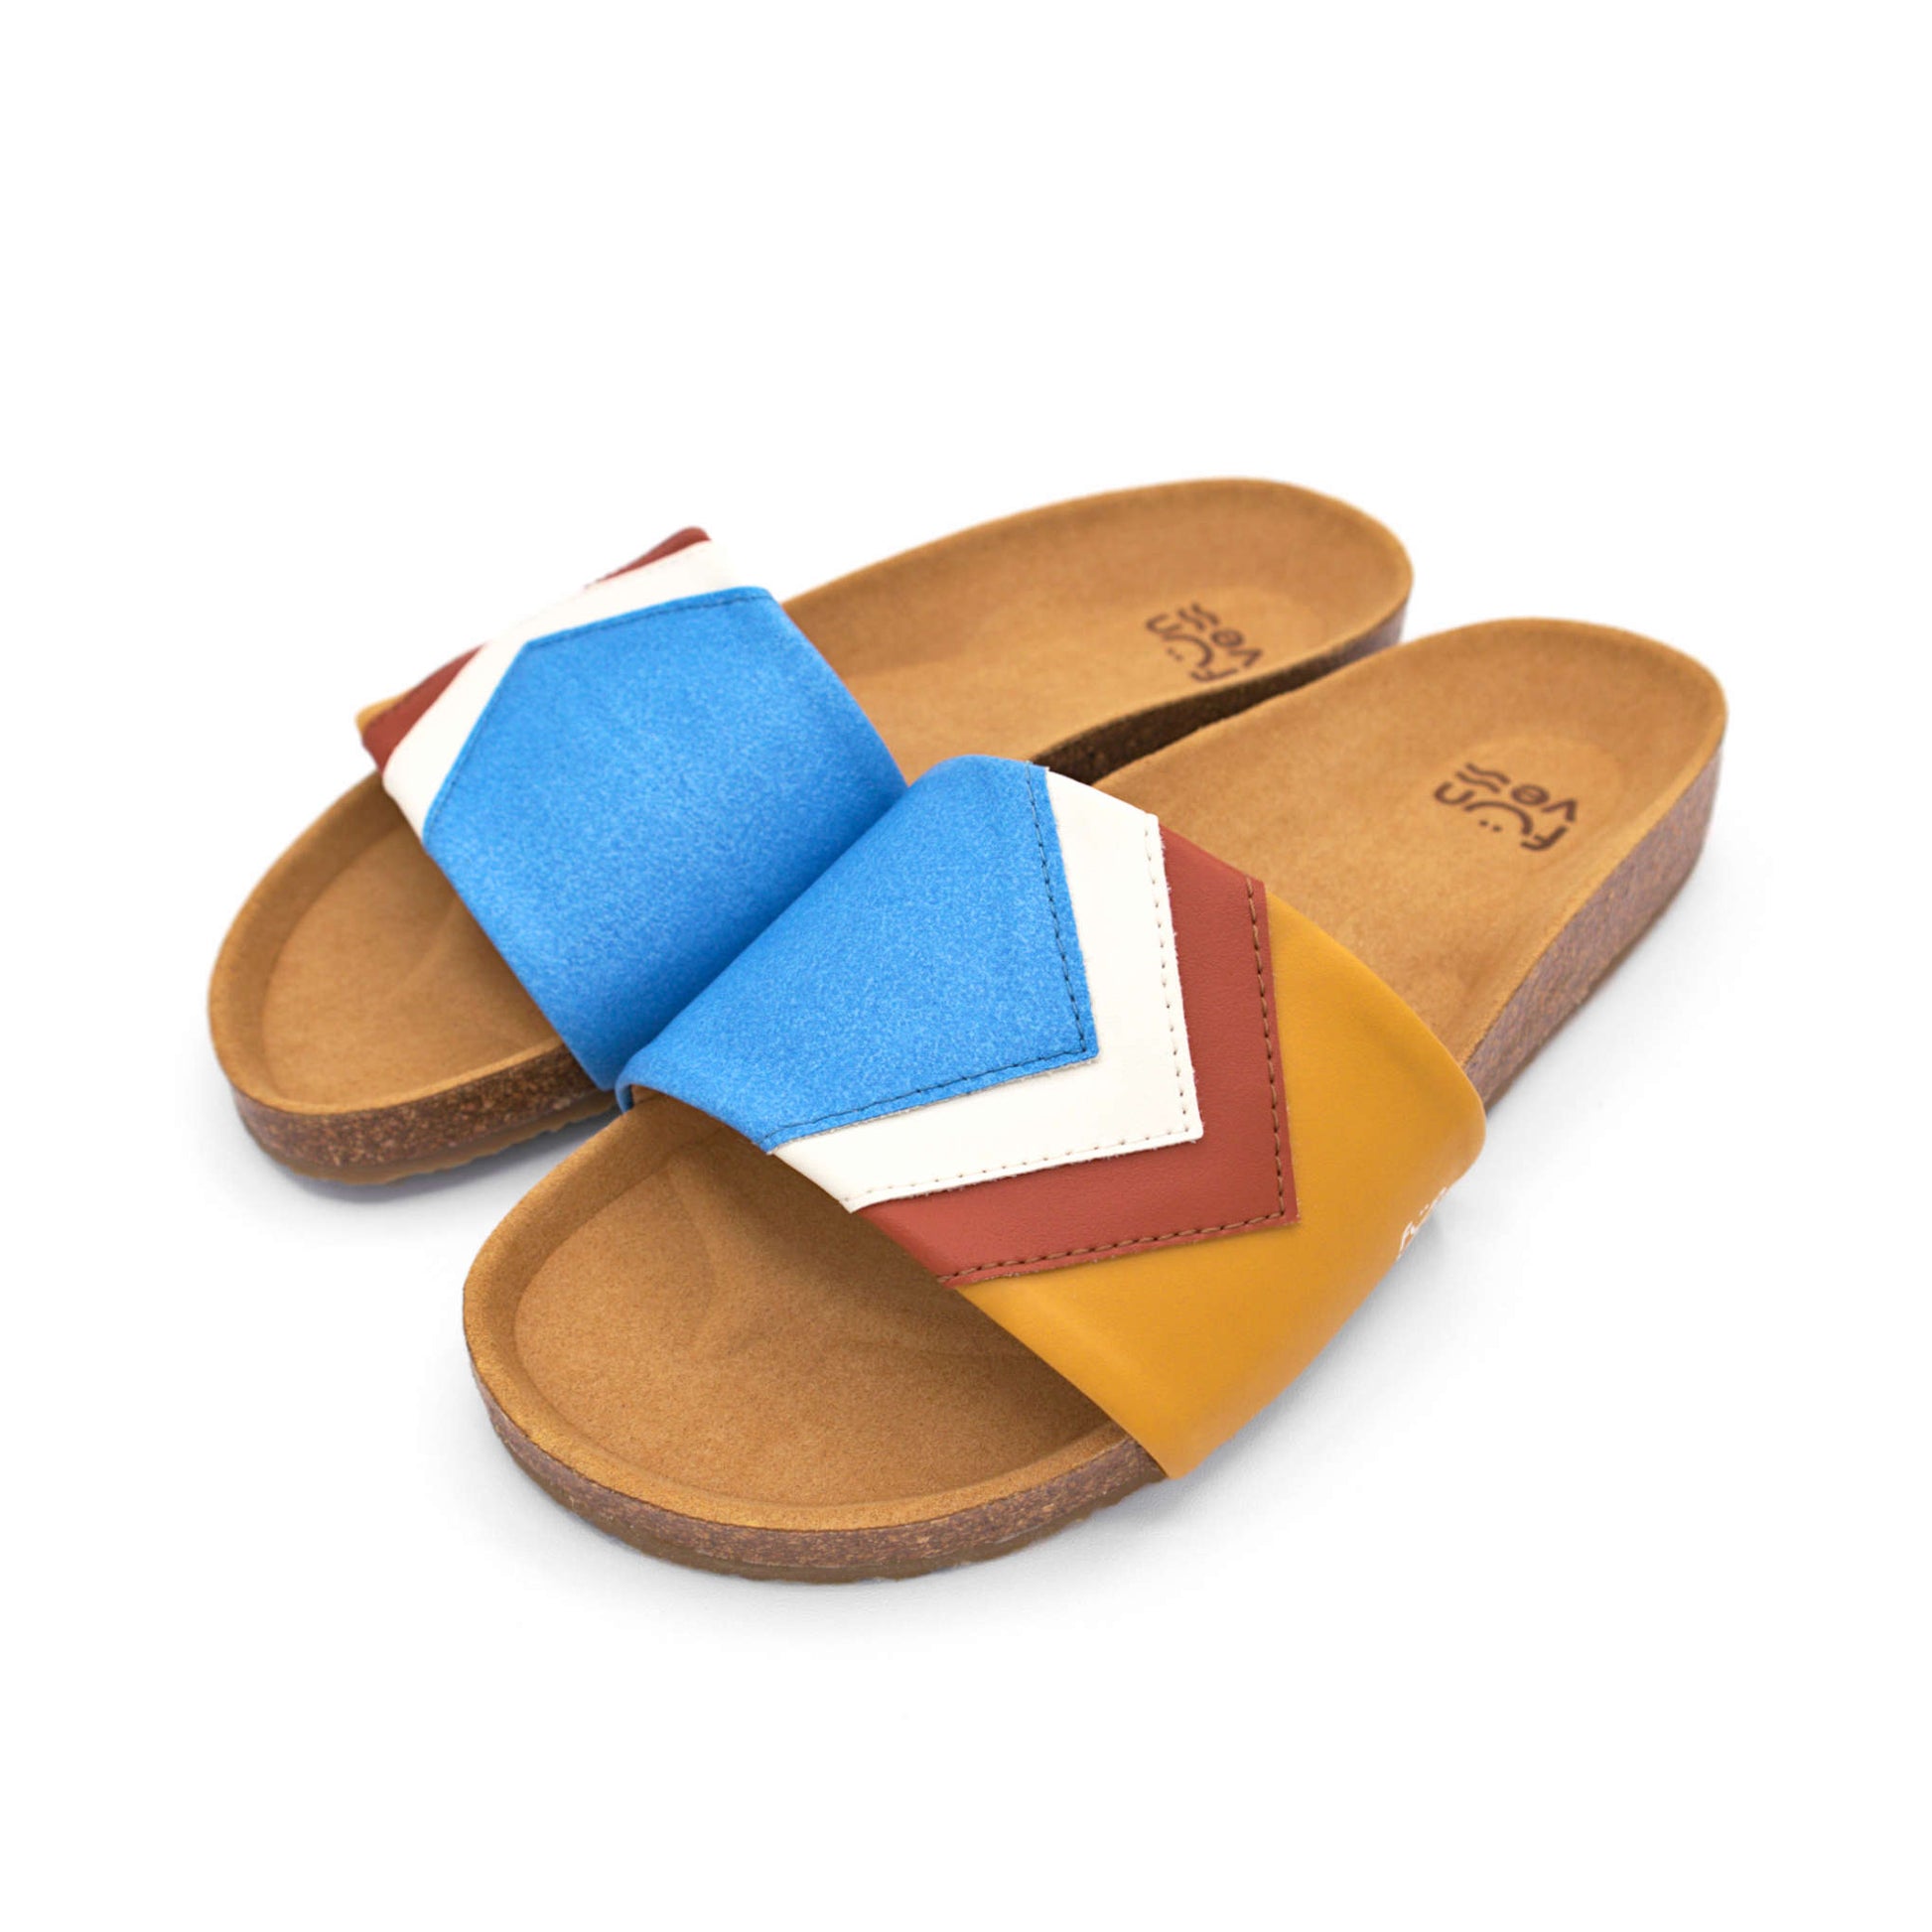 Blaue Sandalen, vegan mit Fußbett, Farben Azur, Weiß, Rust, Senf; Marke Fünve, Modell Sky, Seitliche Perspektive